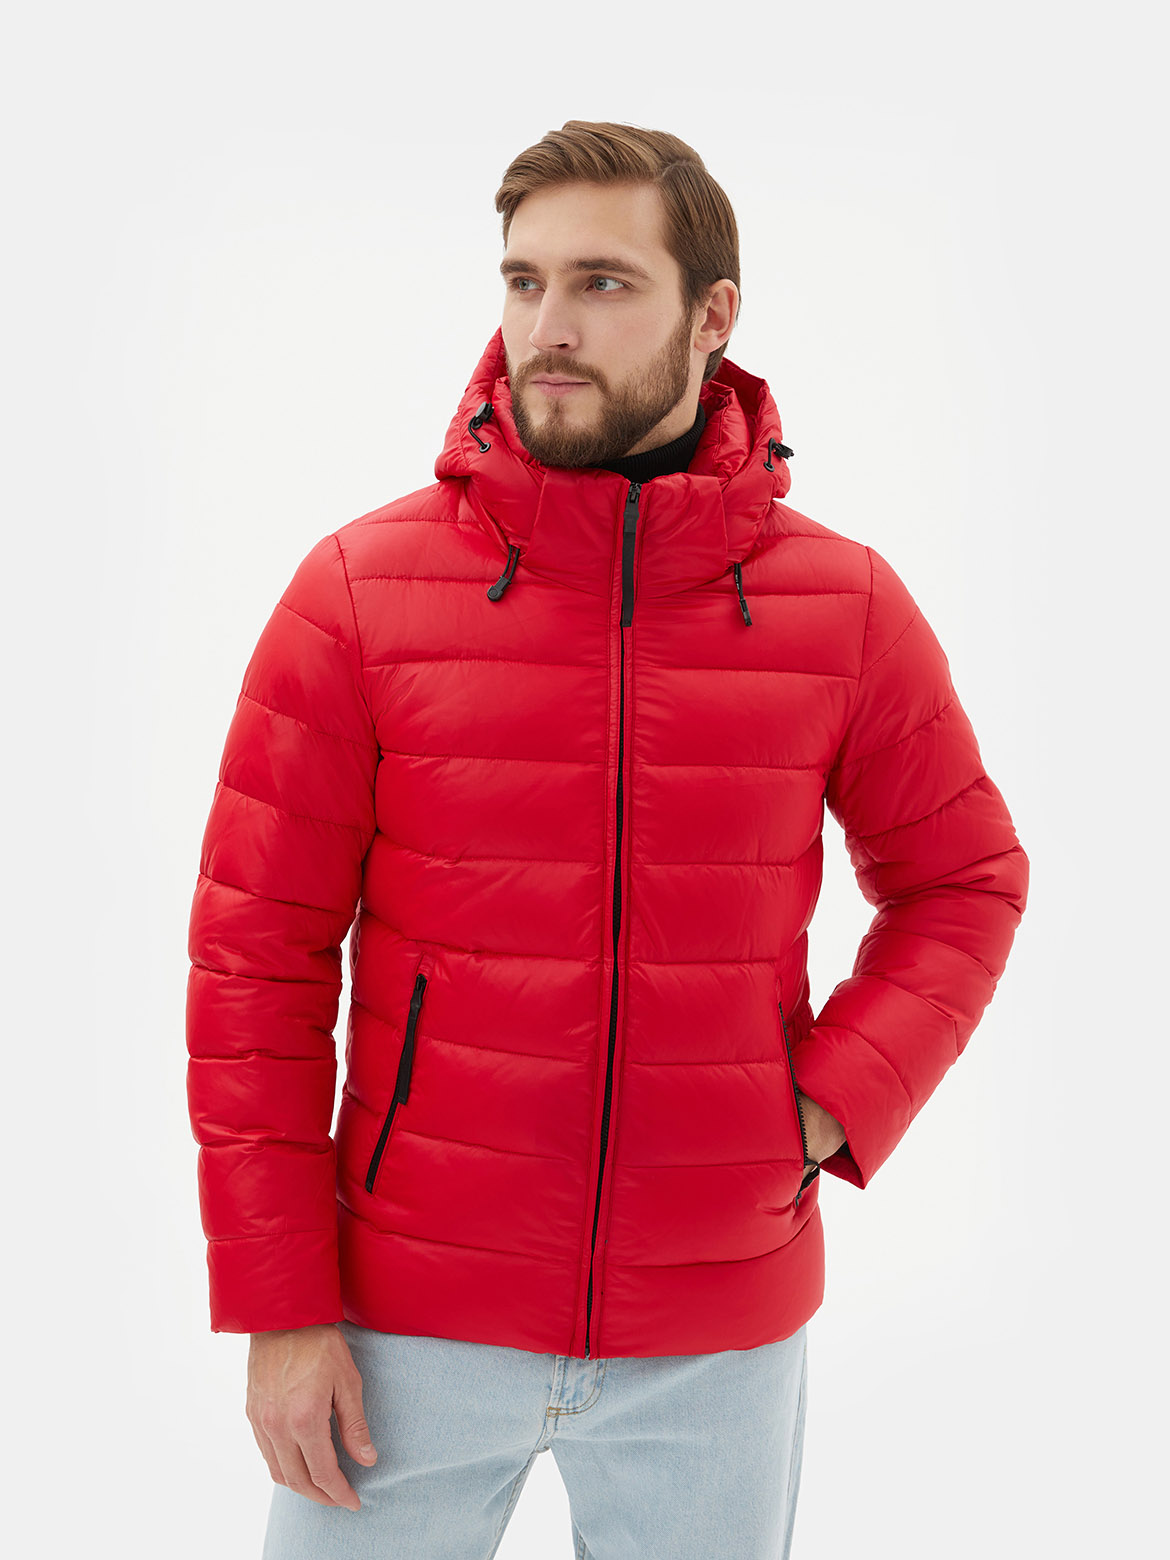 Зимняя куртка мужская Ralf Ringer 72746 красная 50